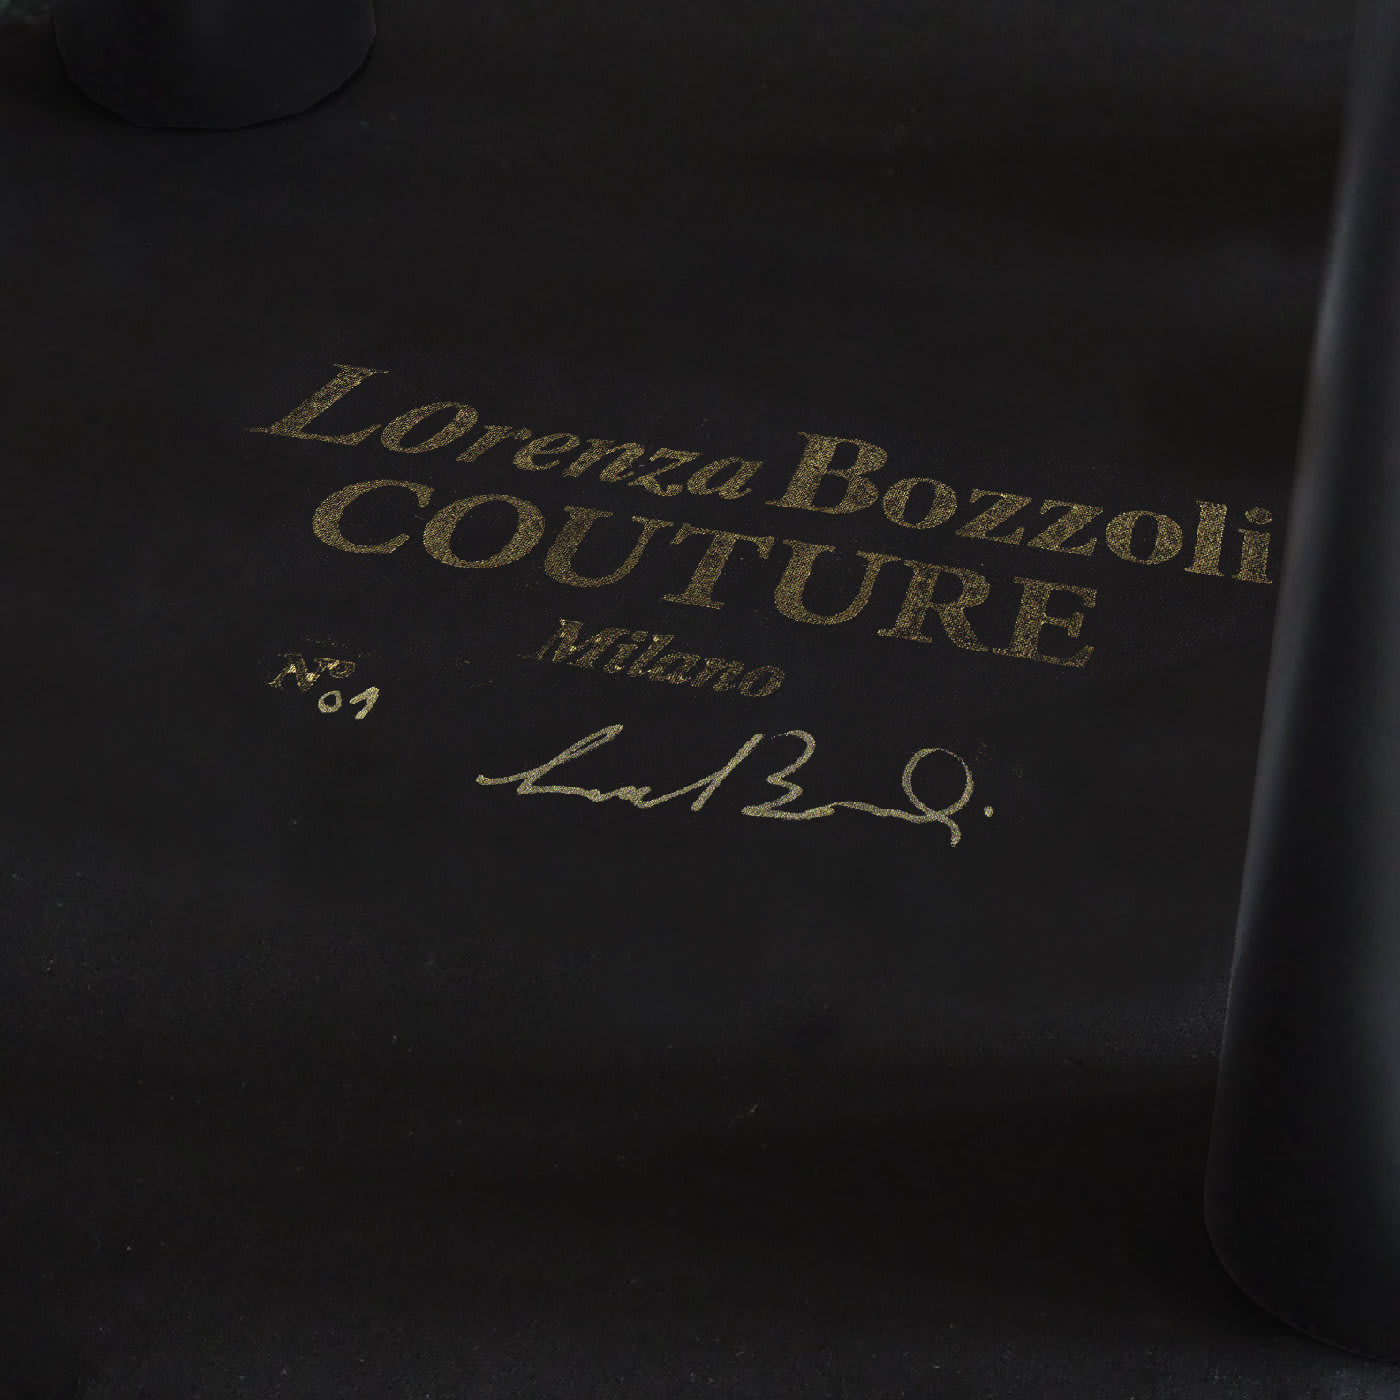 Couture Geometric Wien Brown Ottoman - Lorenza Bozzoli Design